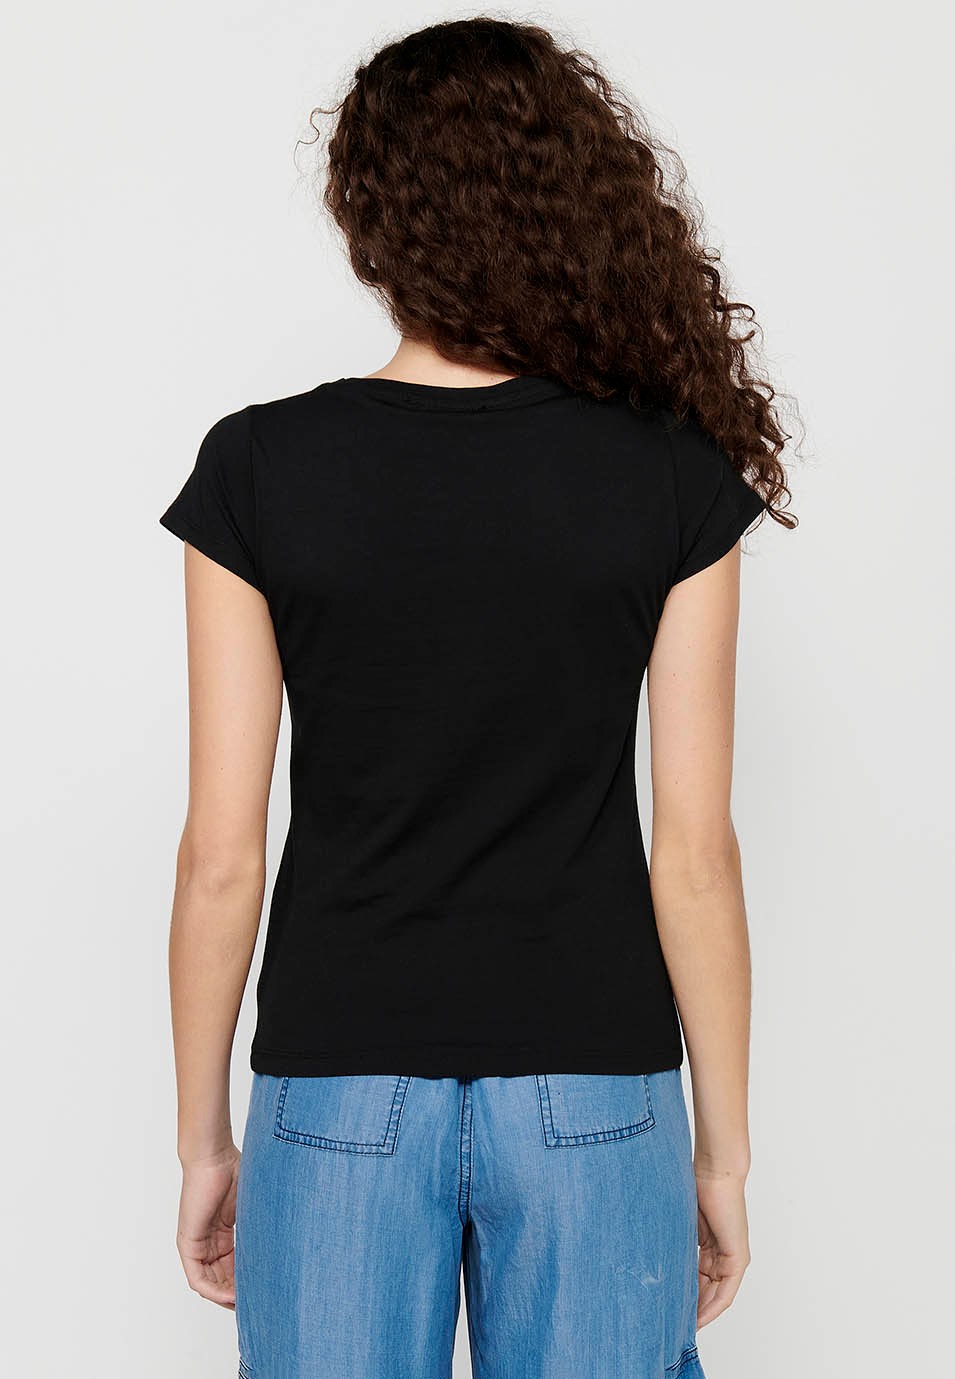 Camiseta de manga corta de Algodón de Cuello redondo con Estampado delantero de Color Negro para Mujer 1